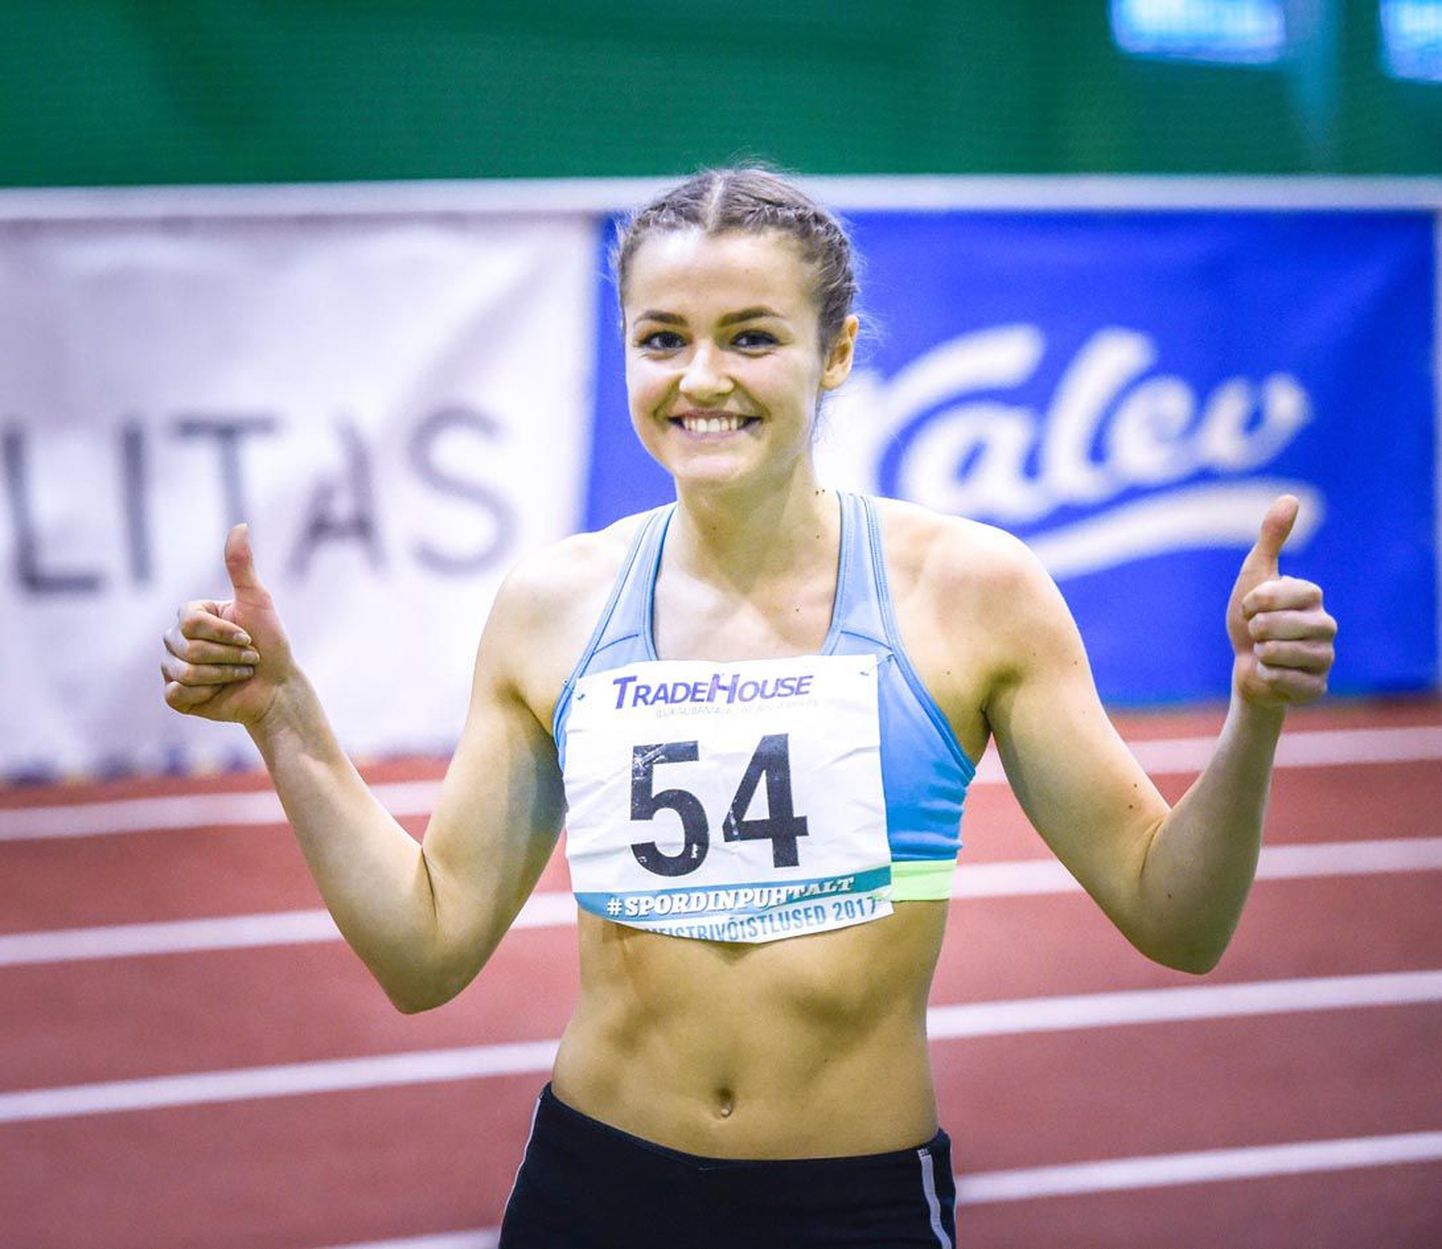 Koerust pärit Lishanna Ilves, kes õpib ja treenib praegu Rakveres, võitis Eesti meistrivõistlustel kaks medalit. Ühtlasi alistas ta kaugushüppes U18 vanuseklassi maailmameistrivõistluste normi.